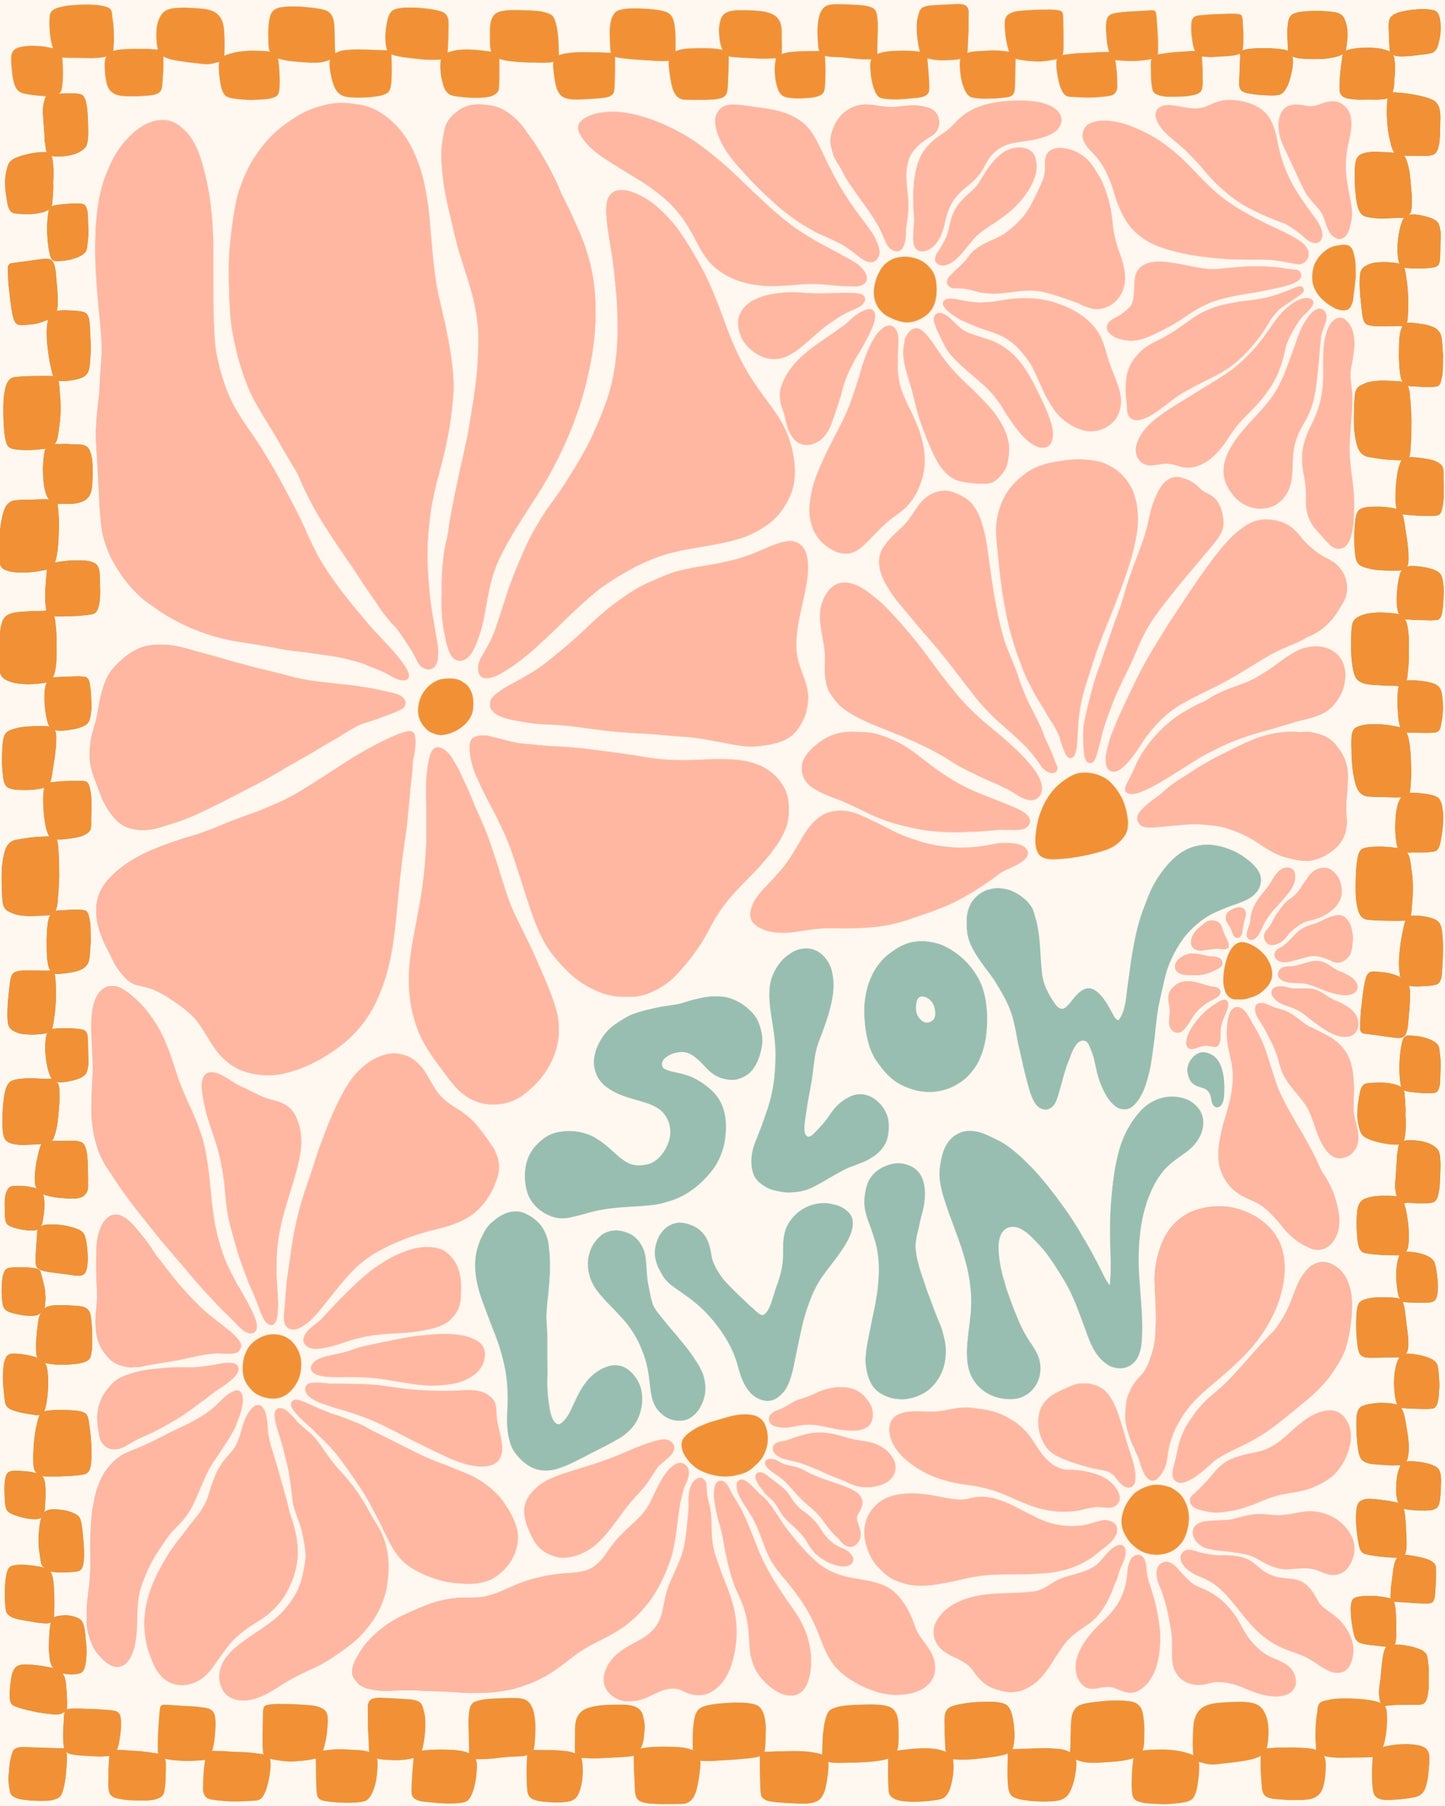 Slow Livin'